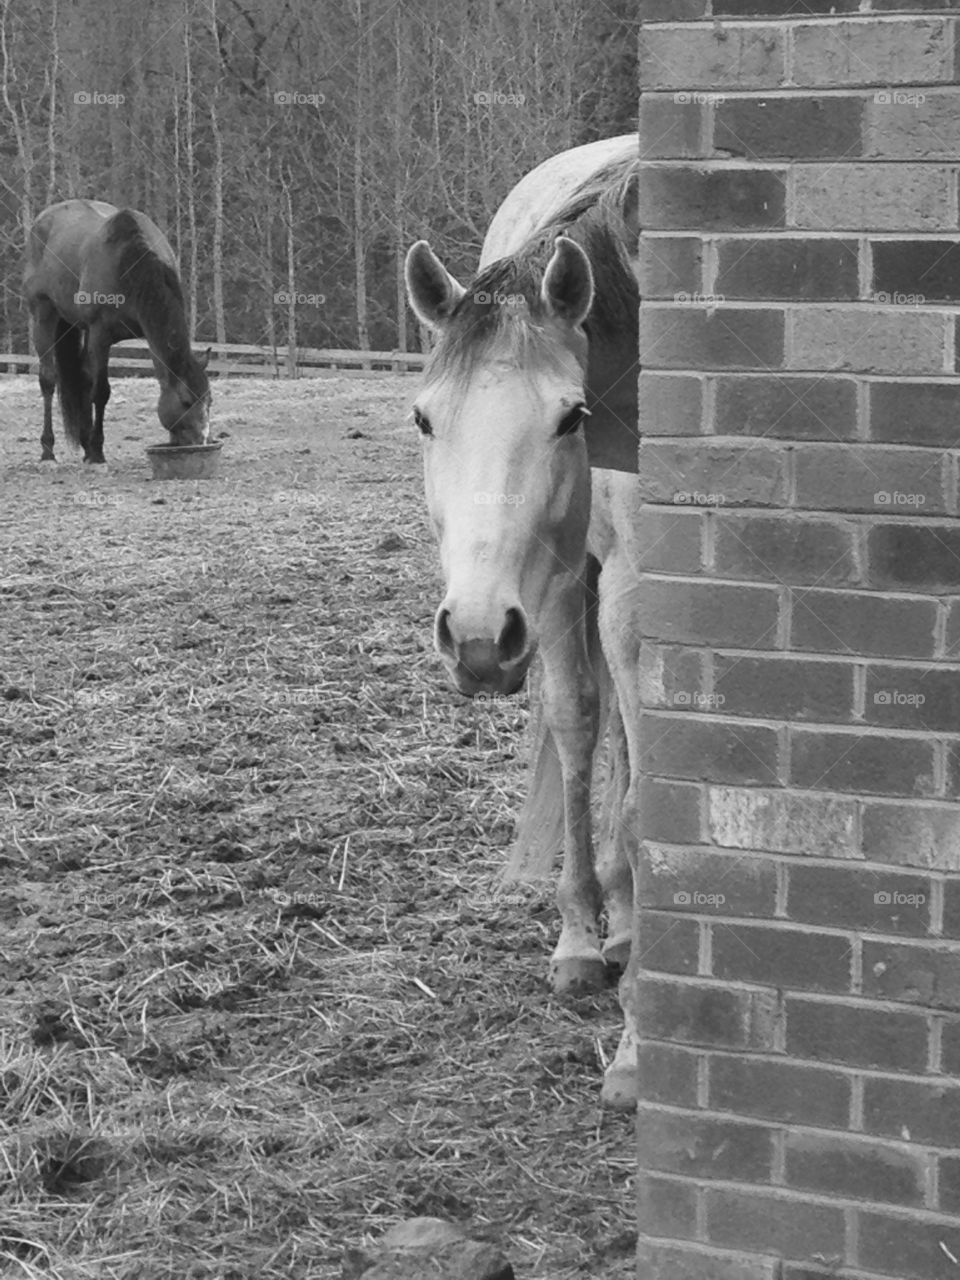 Peeking pony